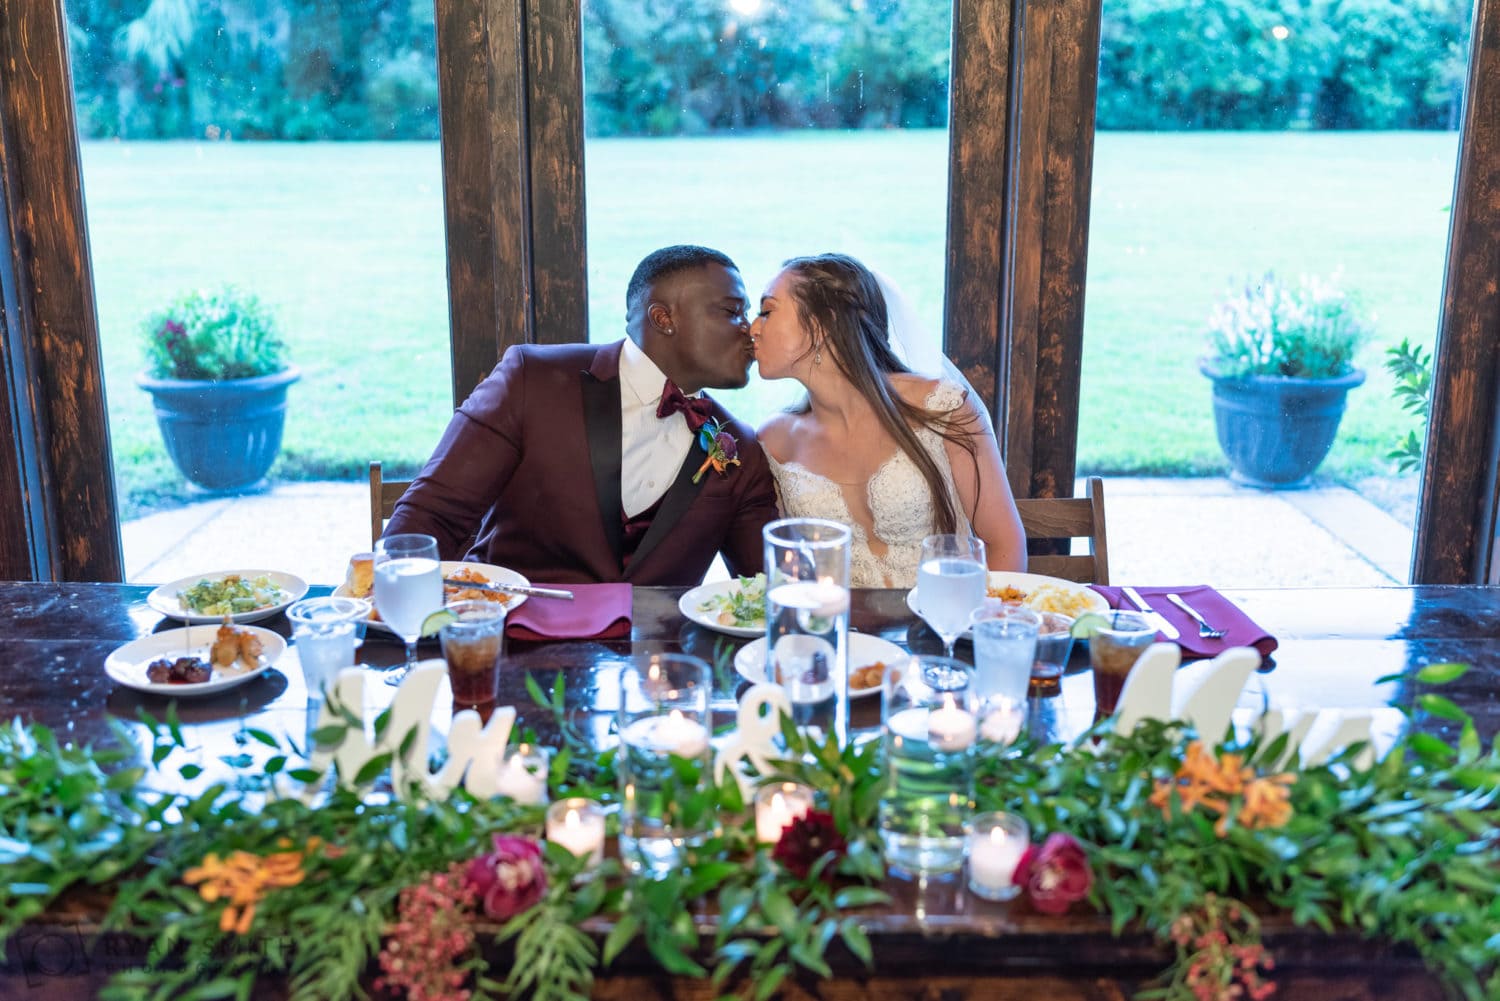 Kiss at the sweetheart table - Magnolia Plantation - Charleston, SC